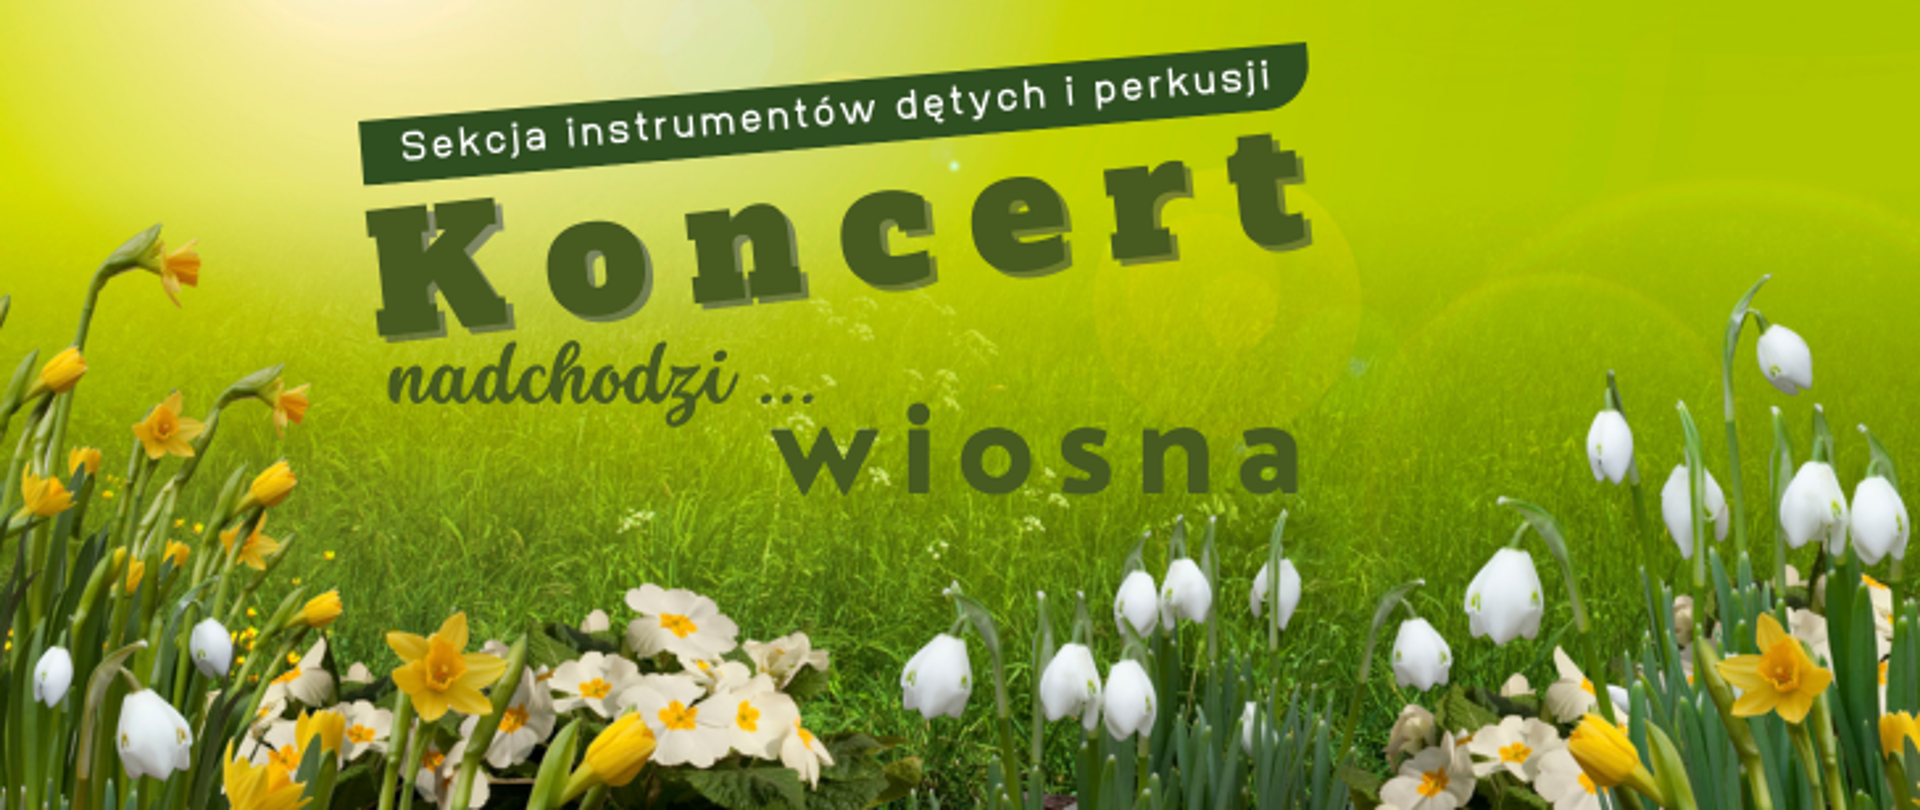 Na tle zielonej trawy z wiosennymi kwiatami napis: Sekcja instrumentów detych i perkusji Koncert nadchodzi ...wiosna 